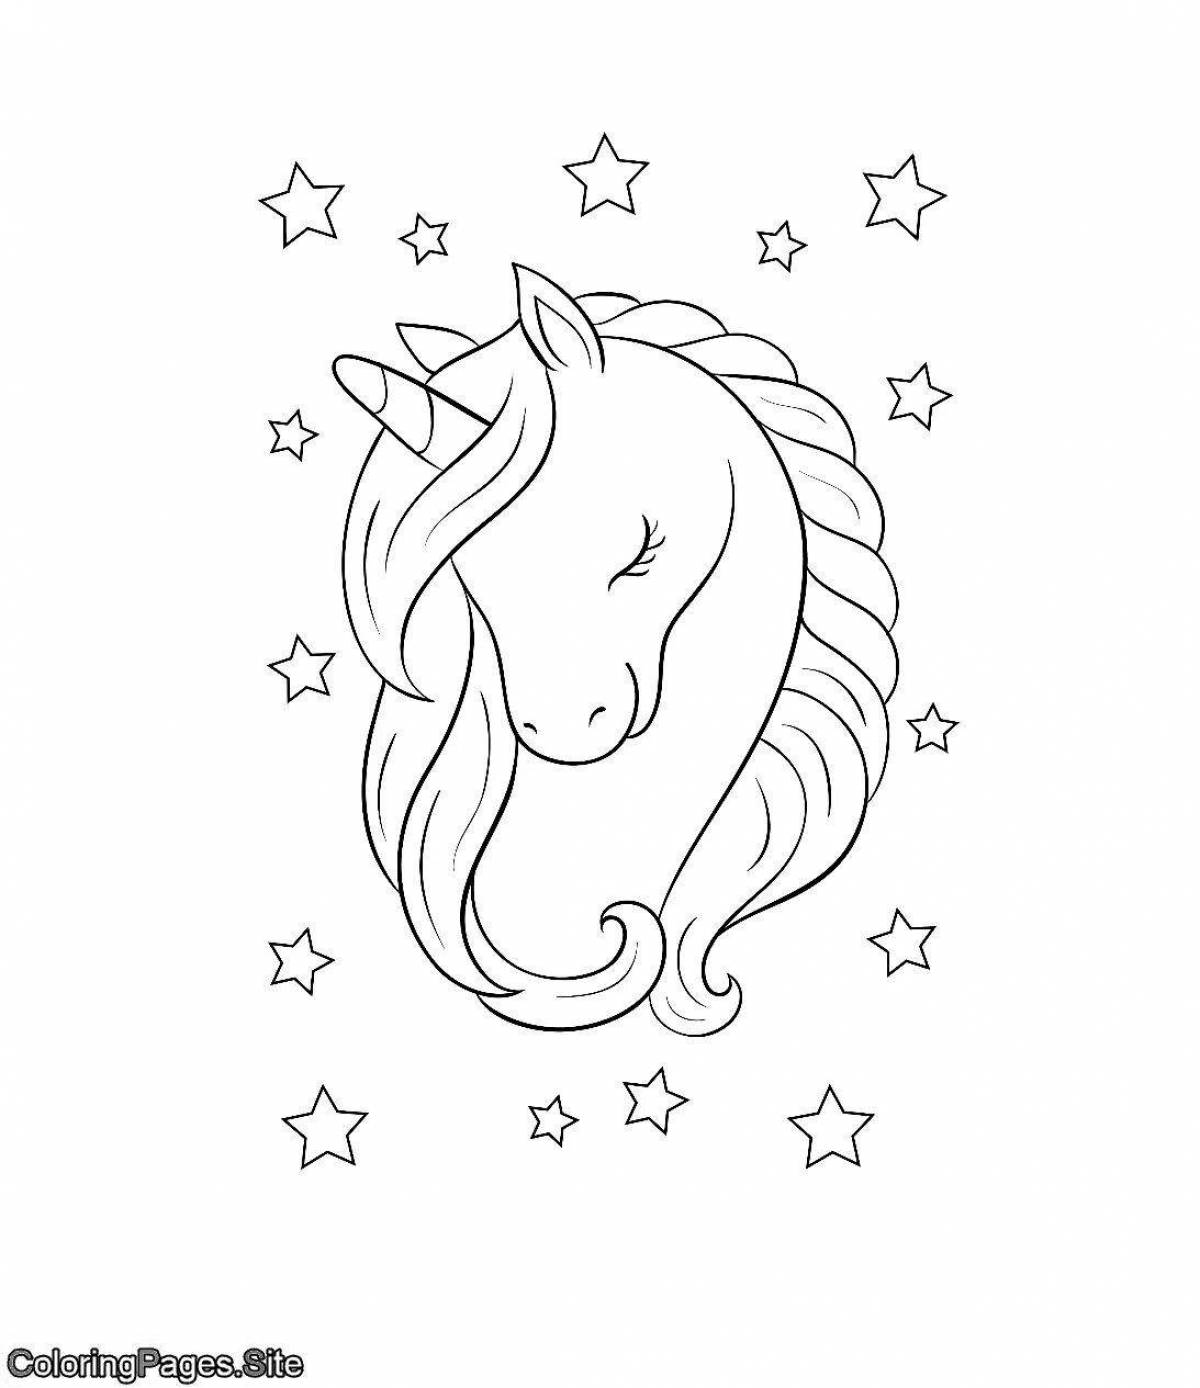 Fun coloring simple unicorn